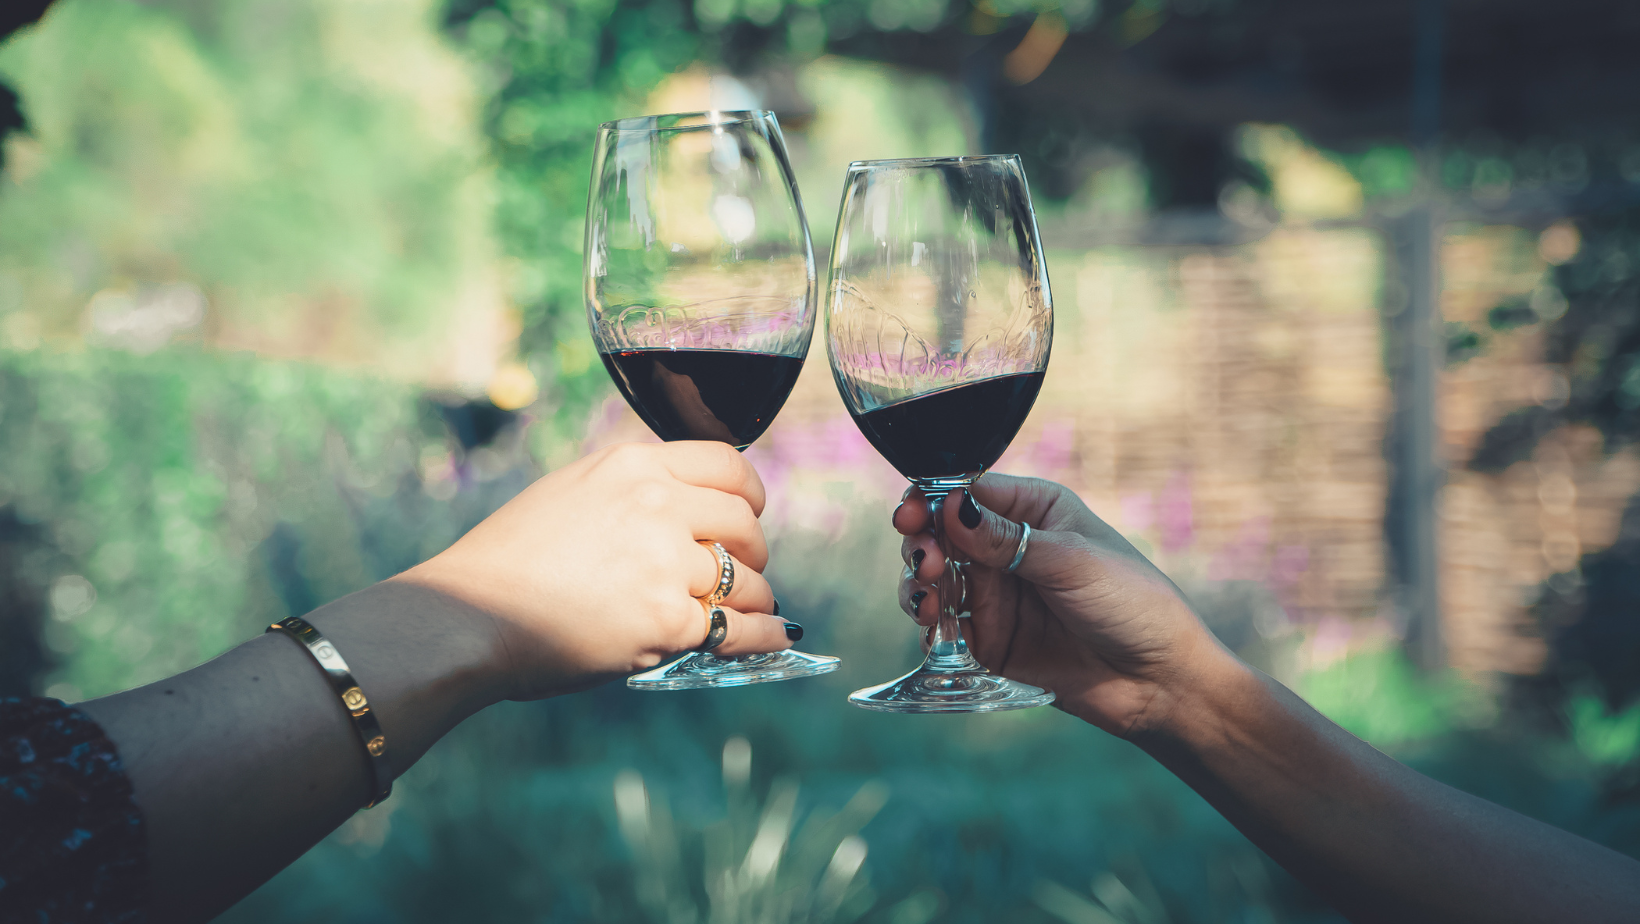 A chi piacciono i vini dealcolati?